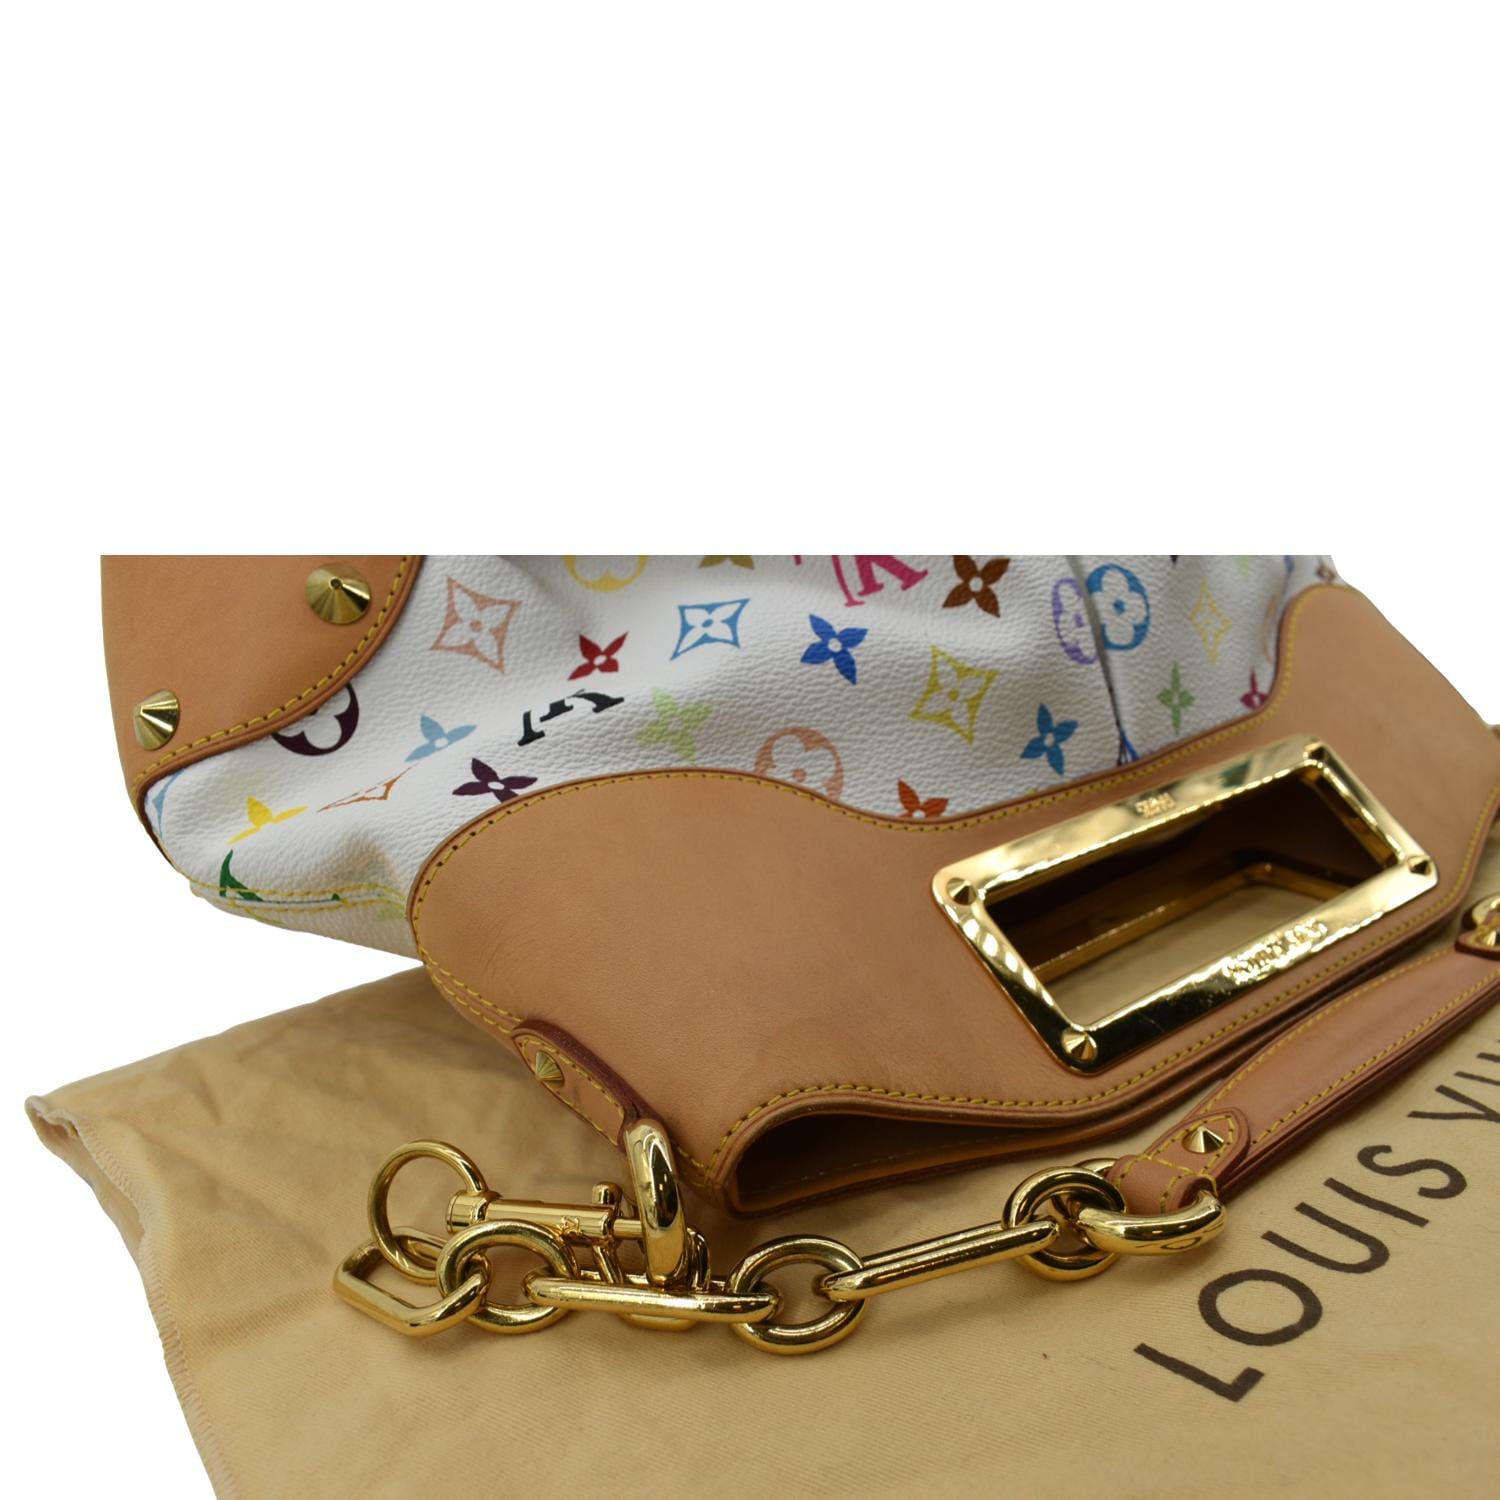 White Louis Vuitton Monogram Multicolore Judy MM Shoulder Bag